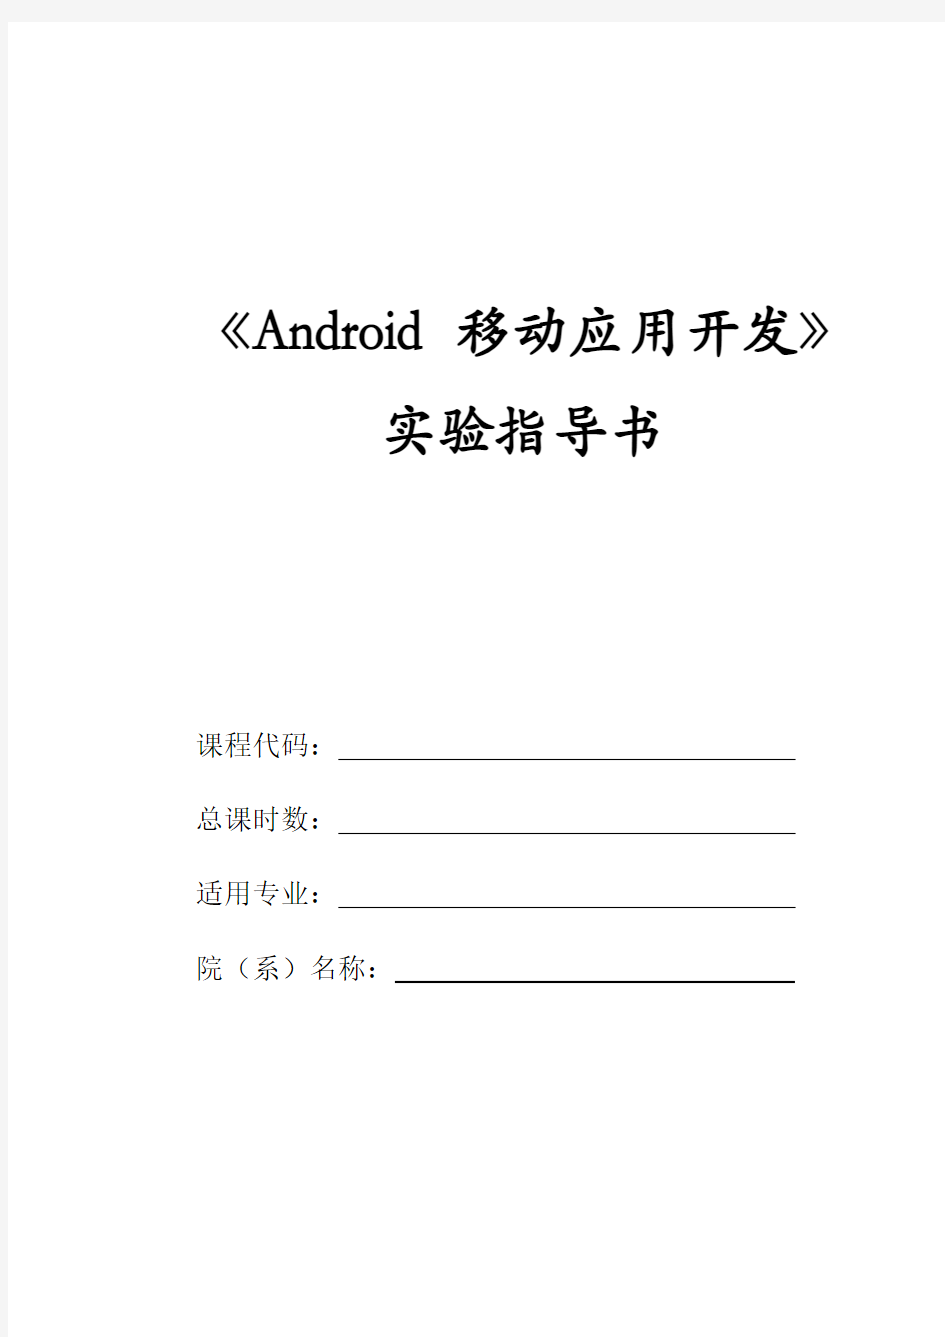 Android移动应用开发实验指导书